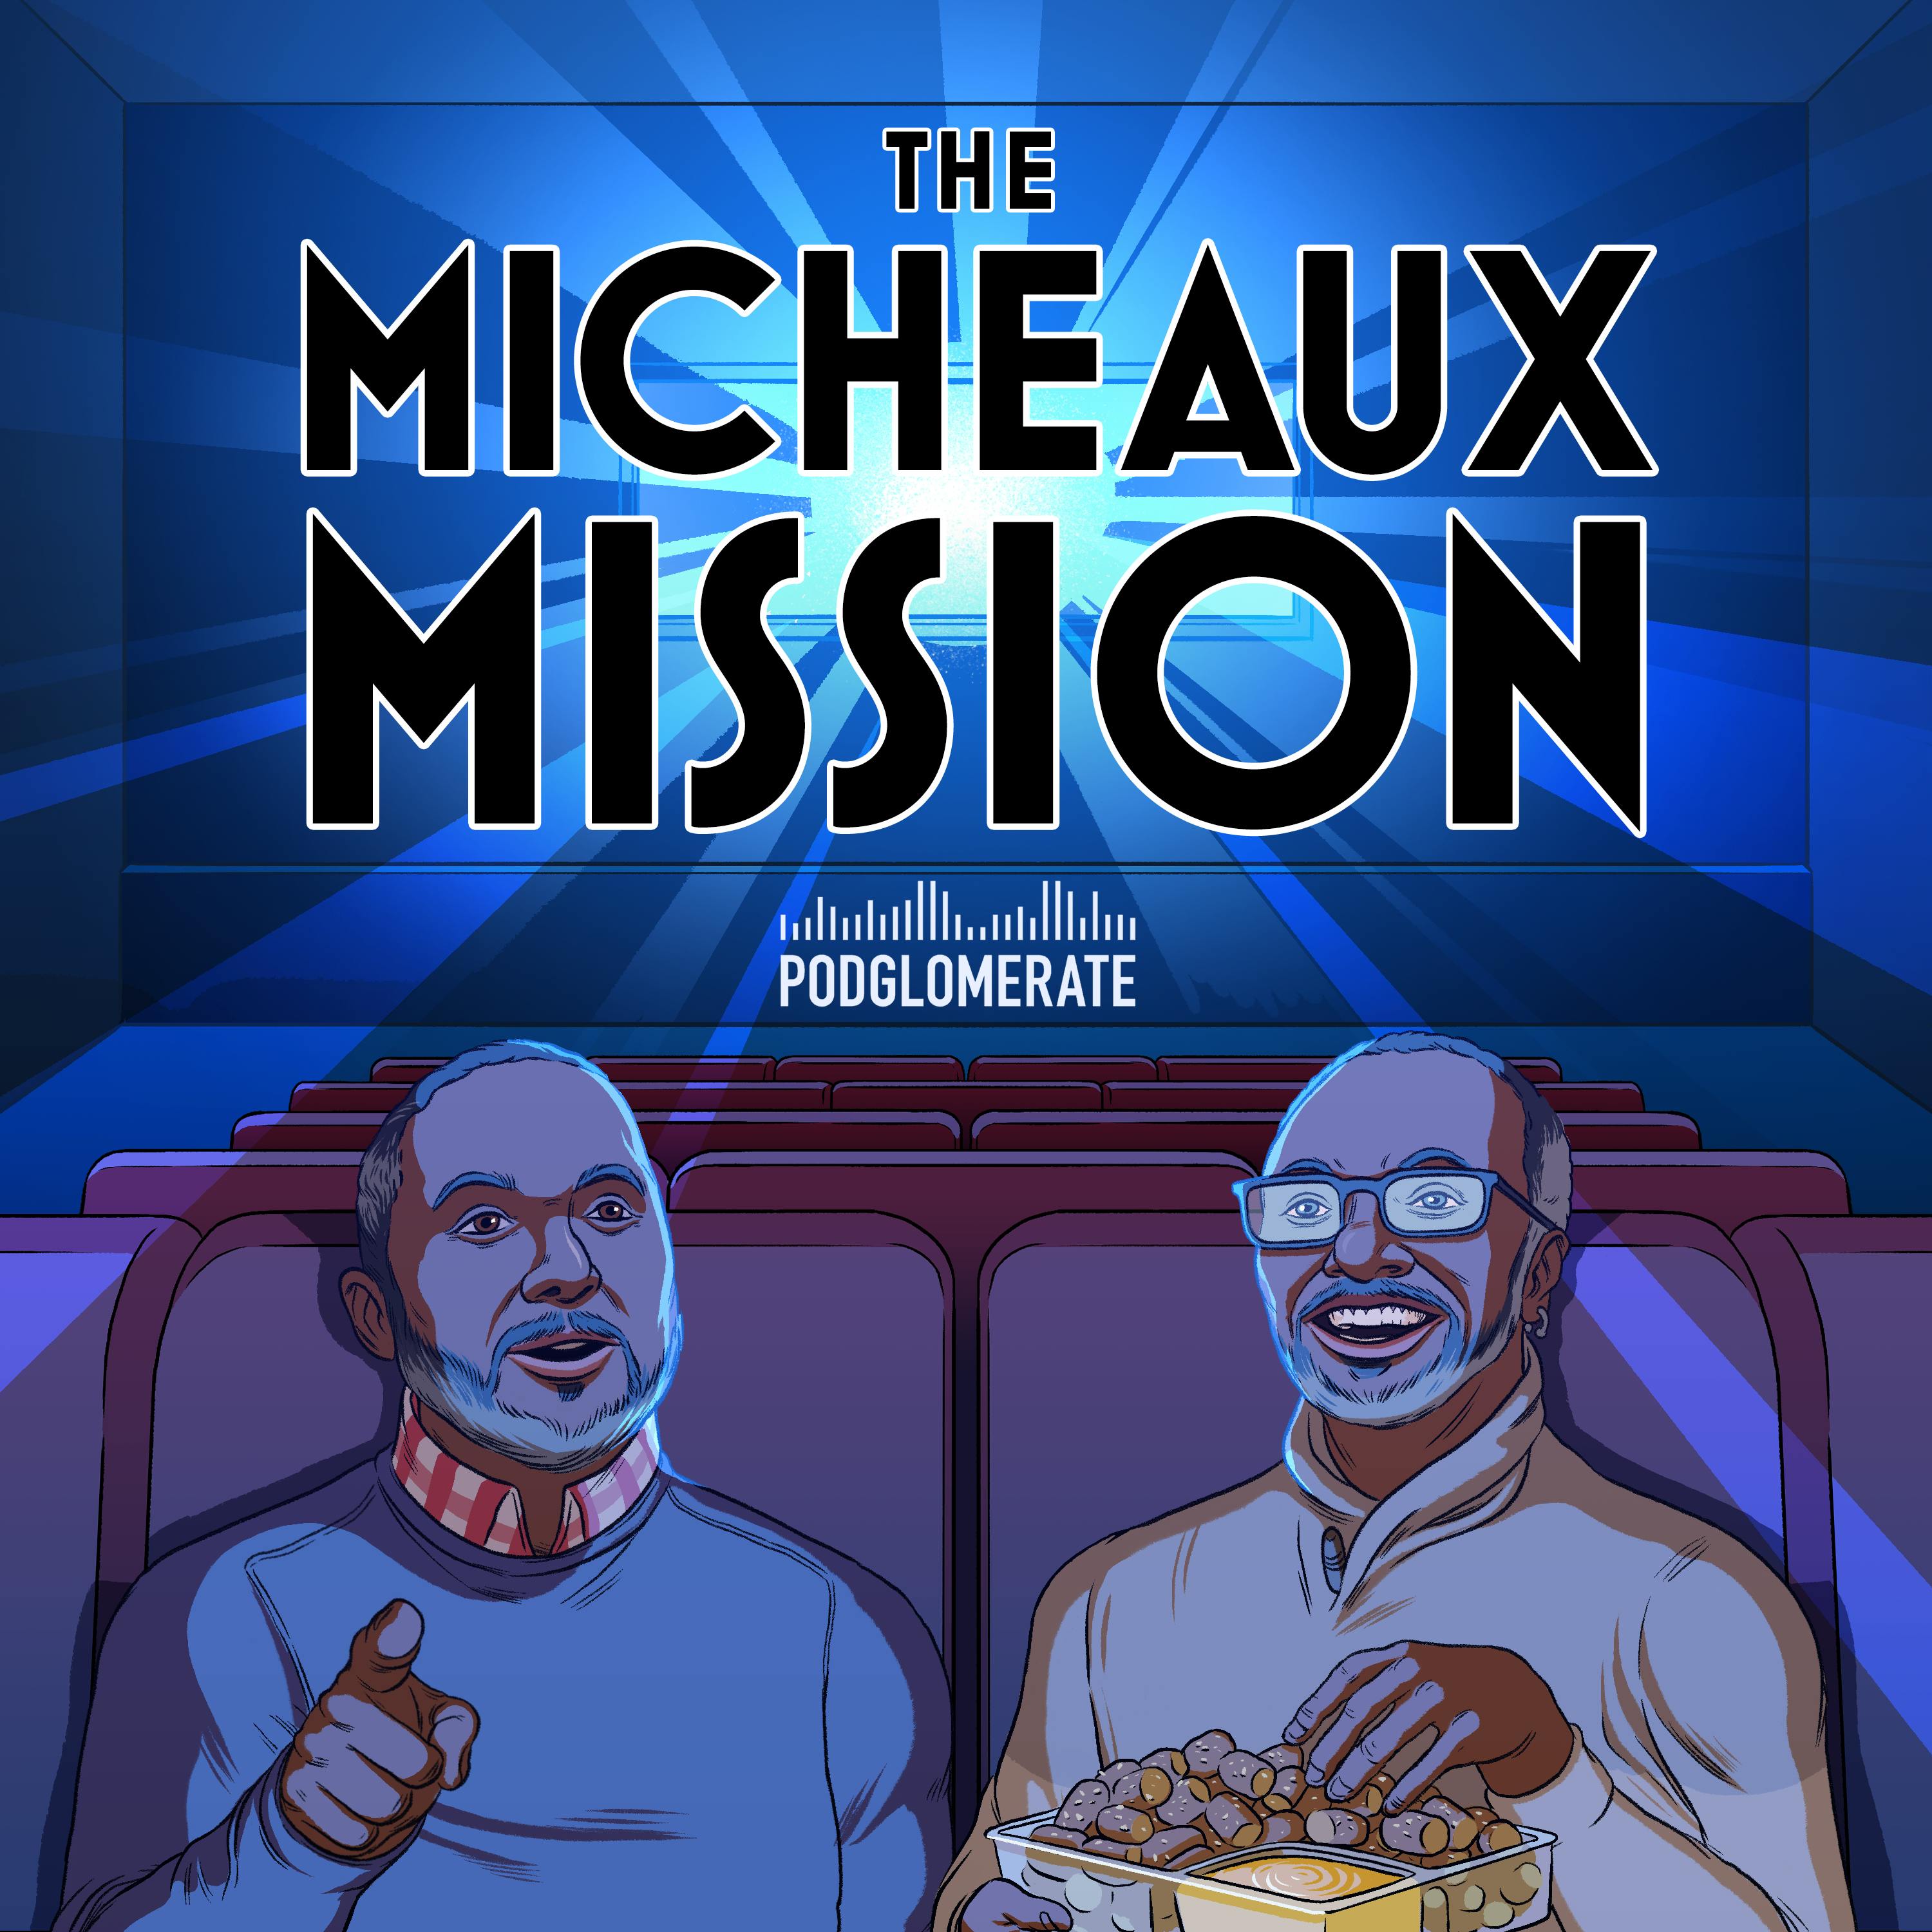 Micheaux Mission podcast show image